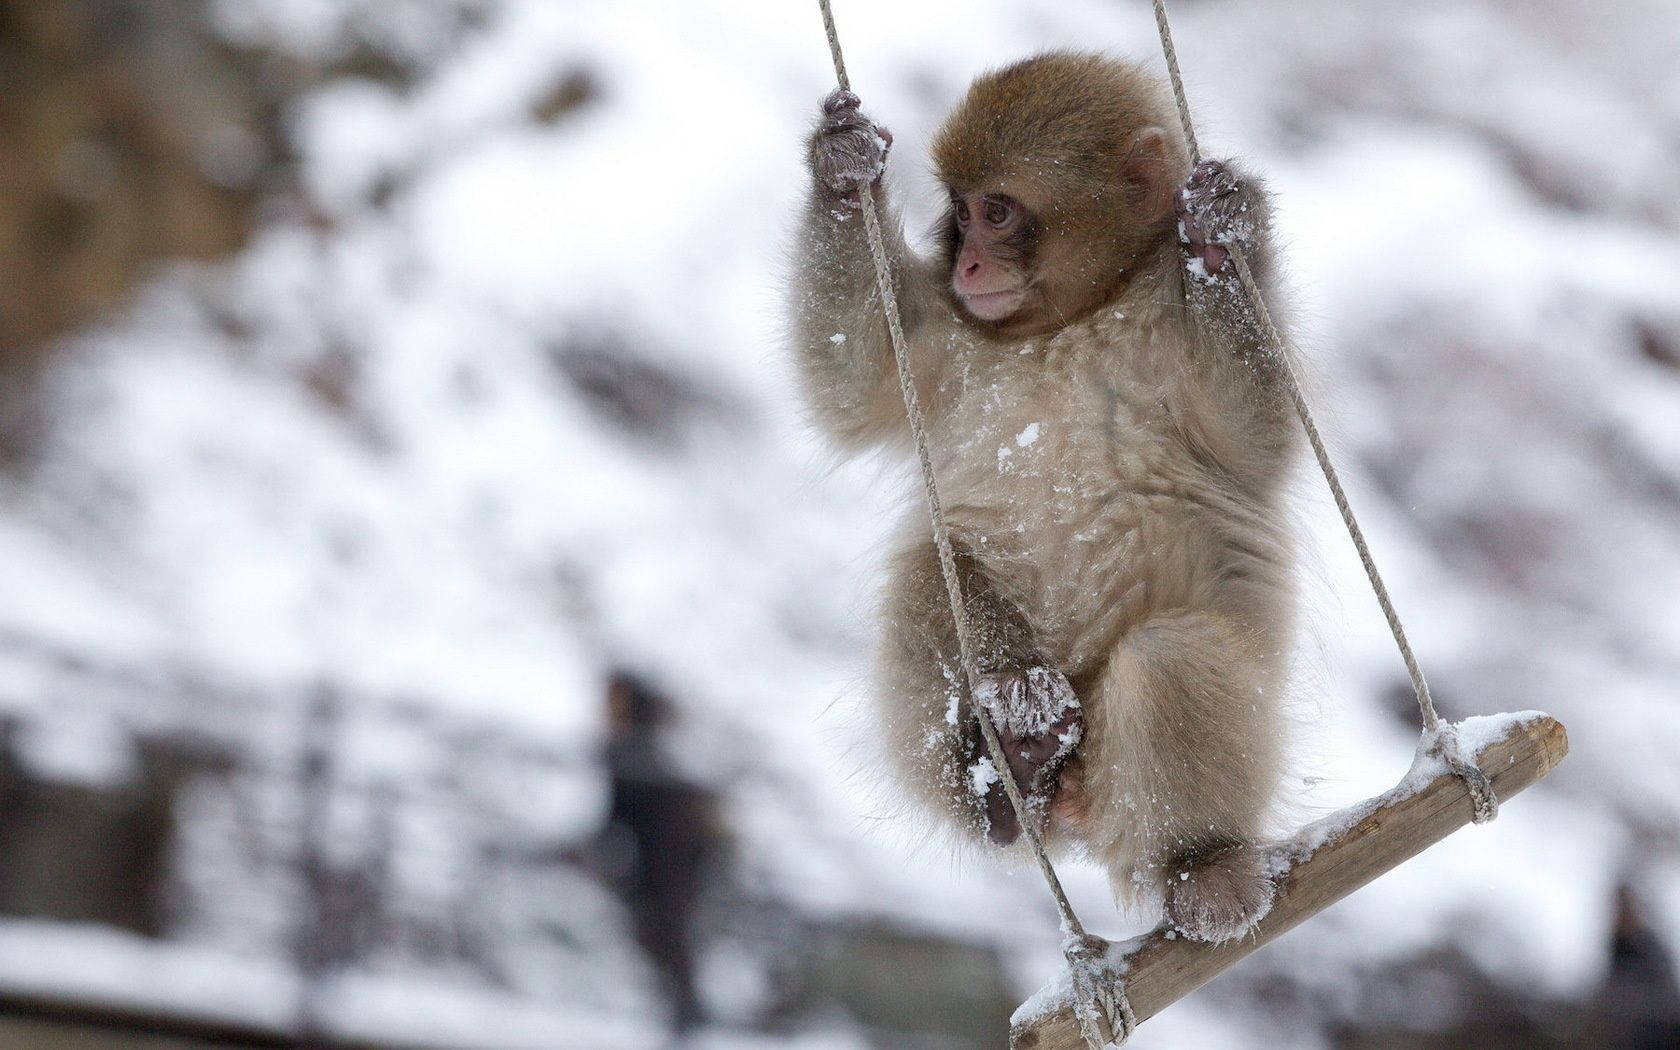 Cute Monkey Swinging